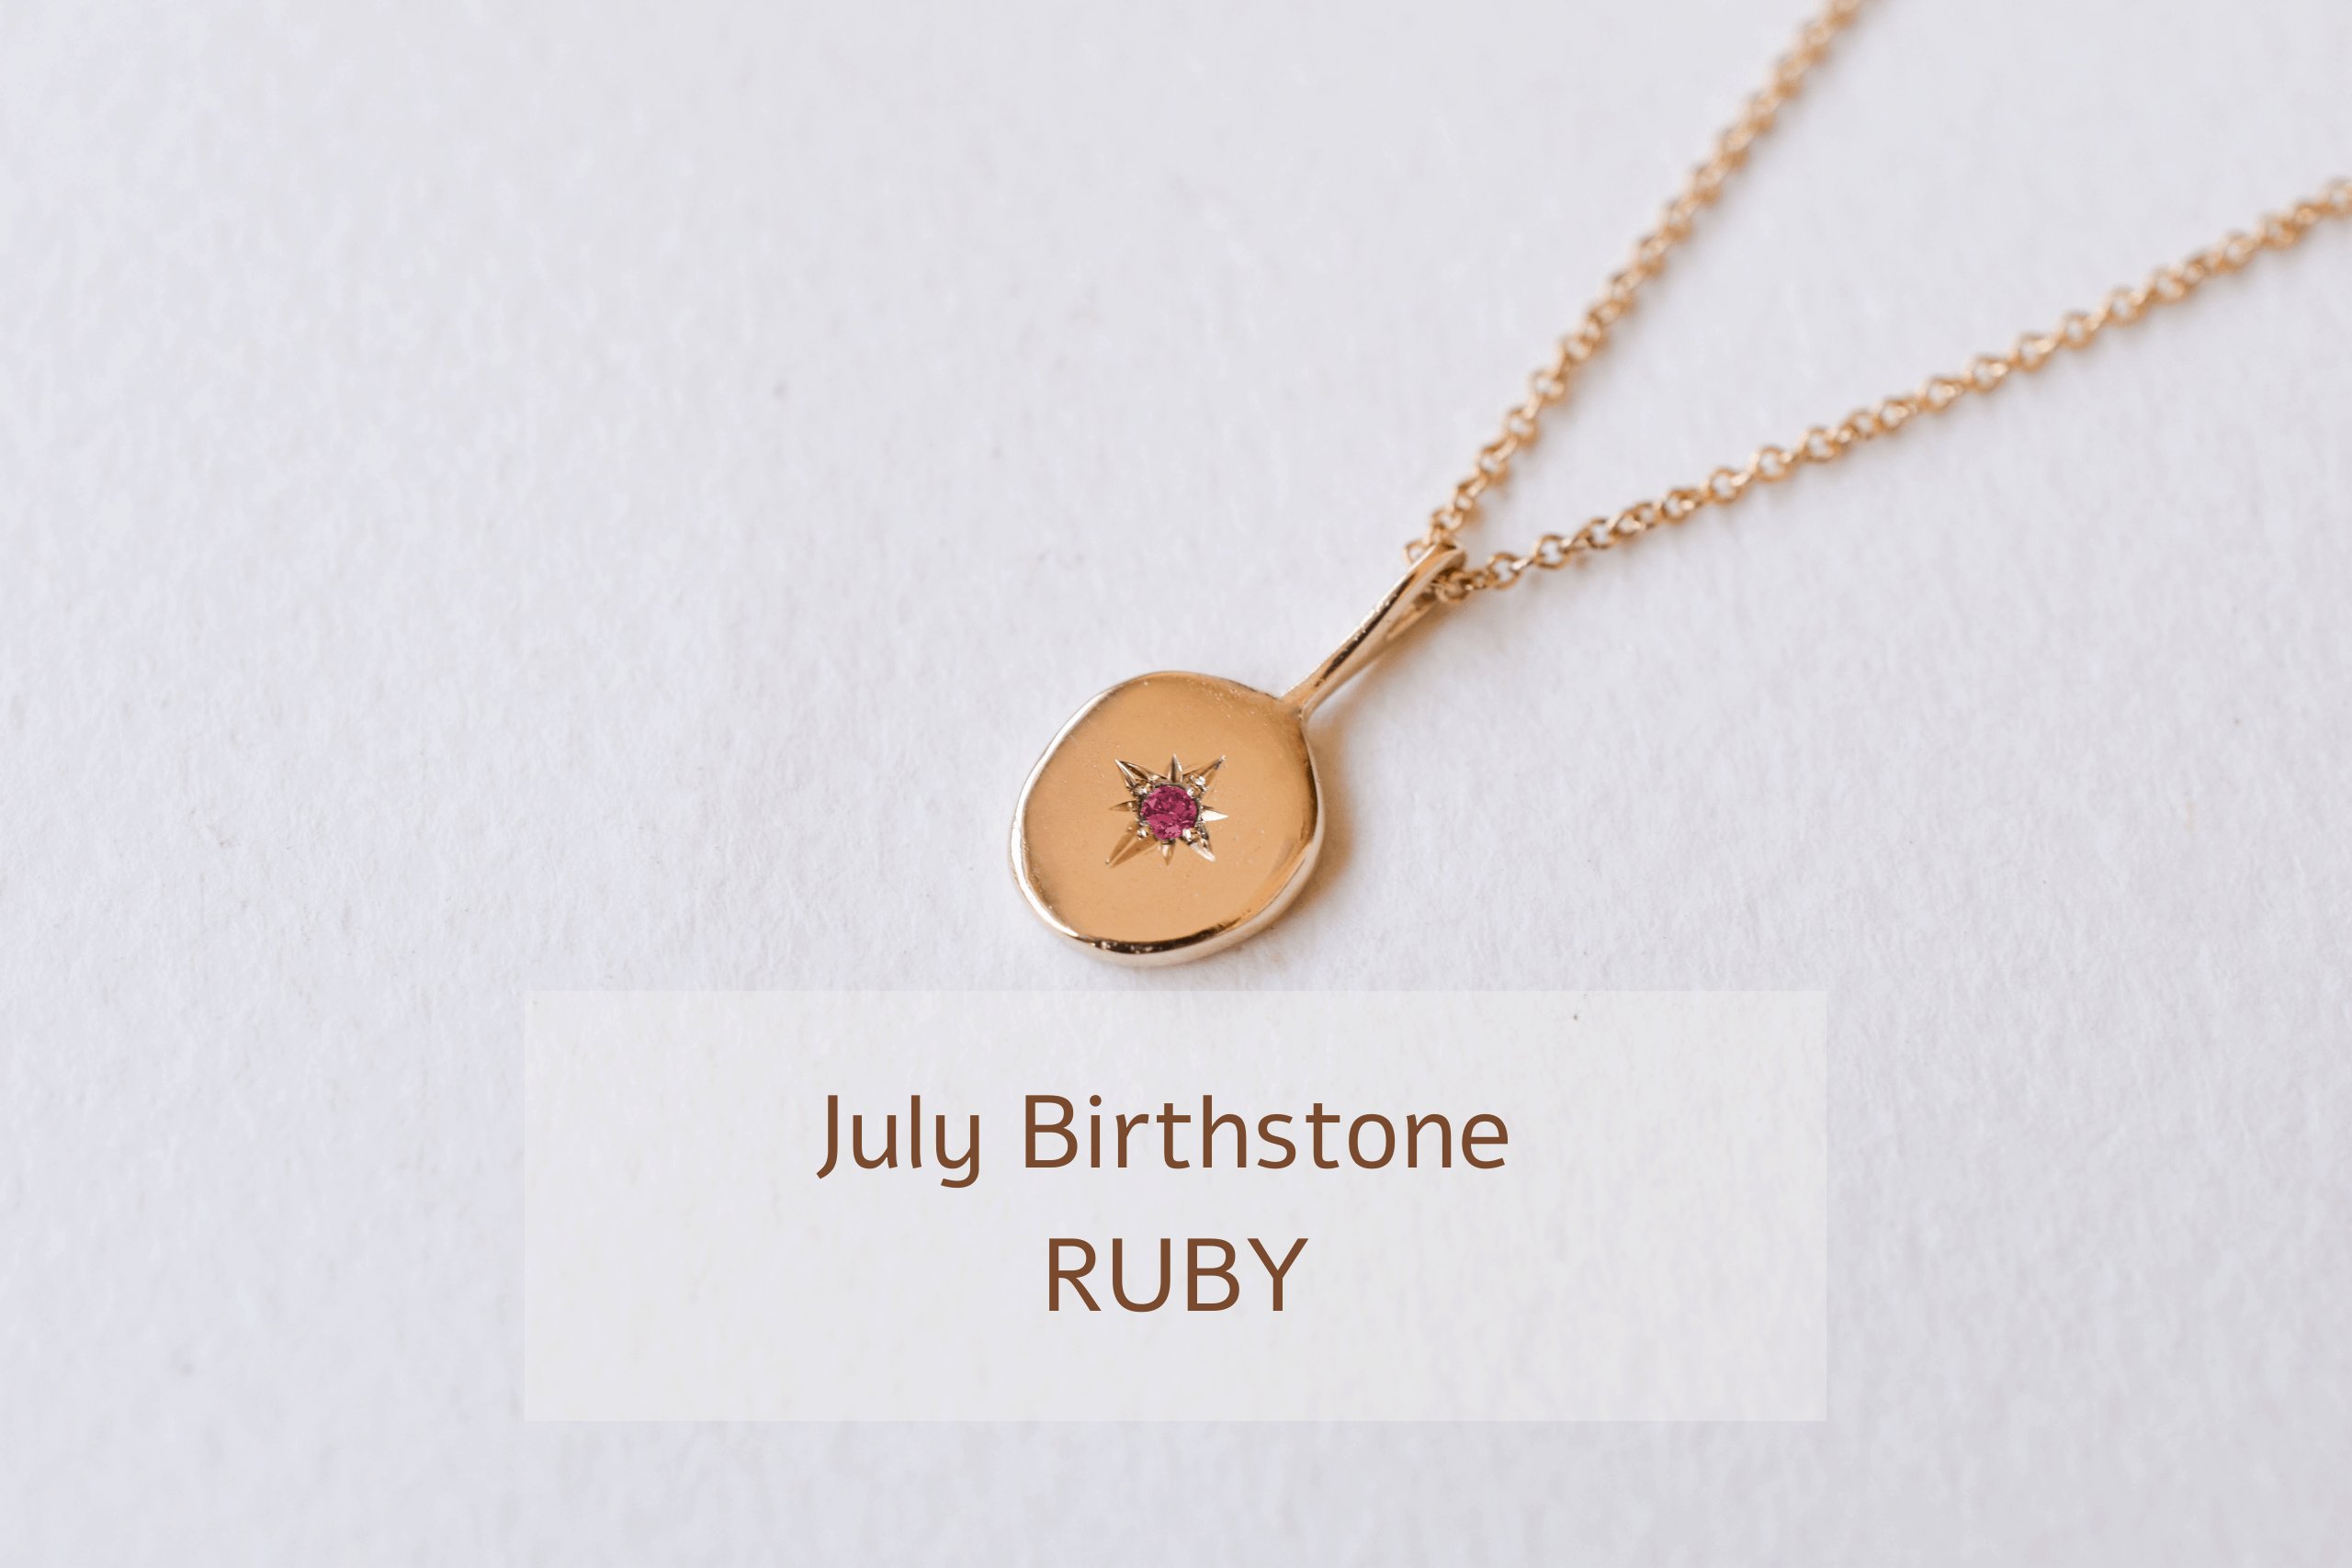 Ruby July Birthstone